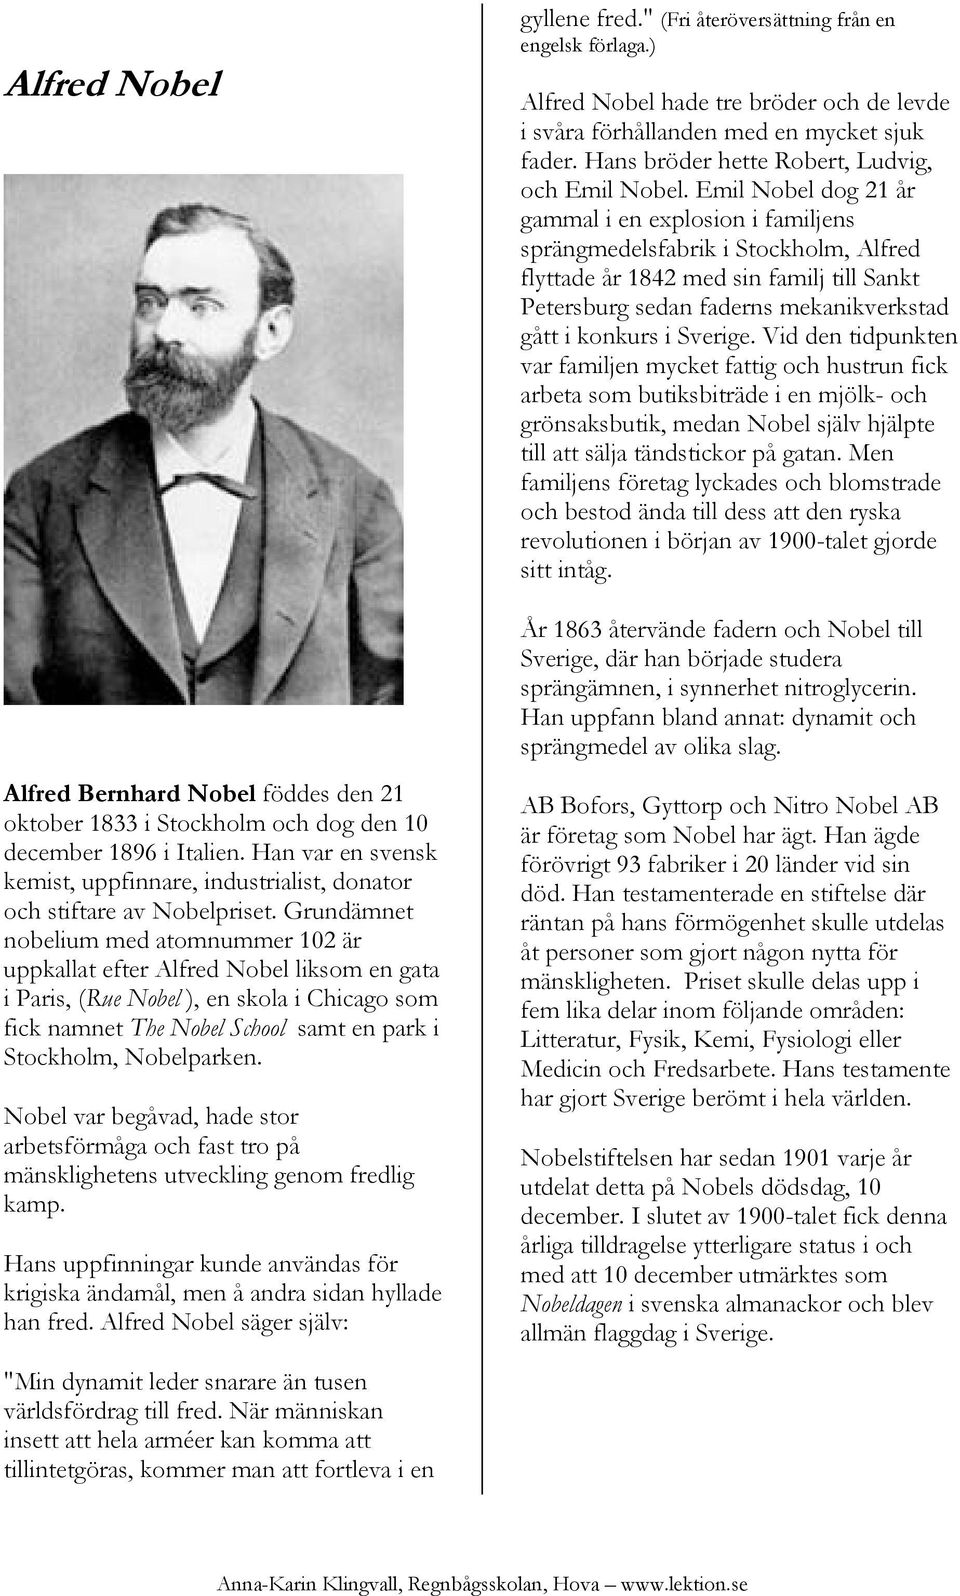 Emil Nobel dog 21 år gammal i en explosion i familjens sprängmedelsfabrik i Stockholm, Alfred flyttade år 1842 med sin familj till Sankt Petersburg sedan faderns mekanikverkstad gått i konkurs i